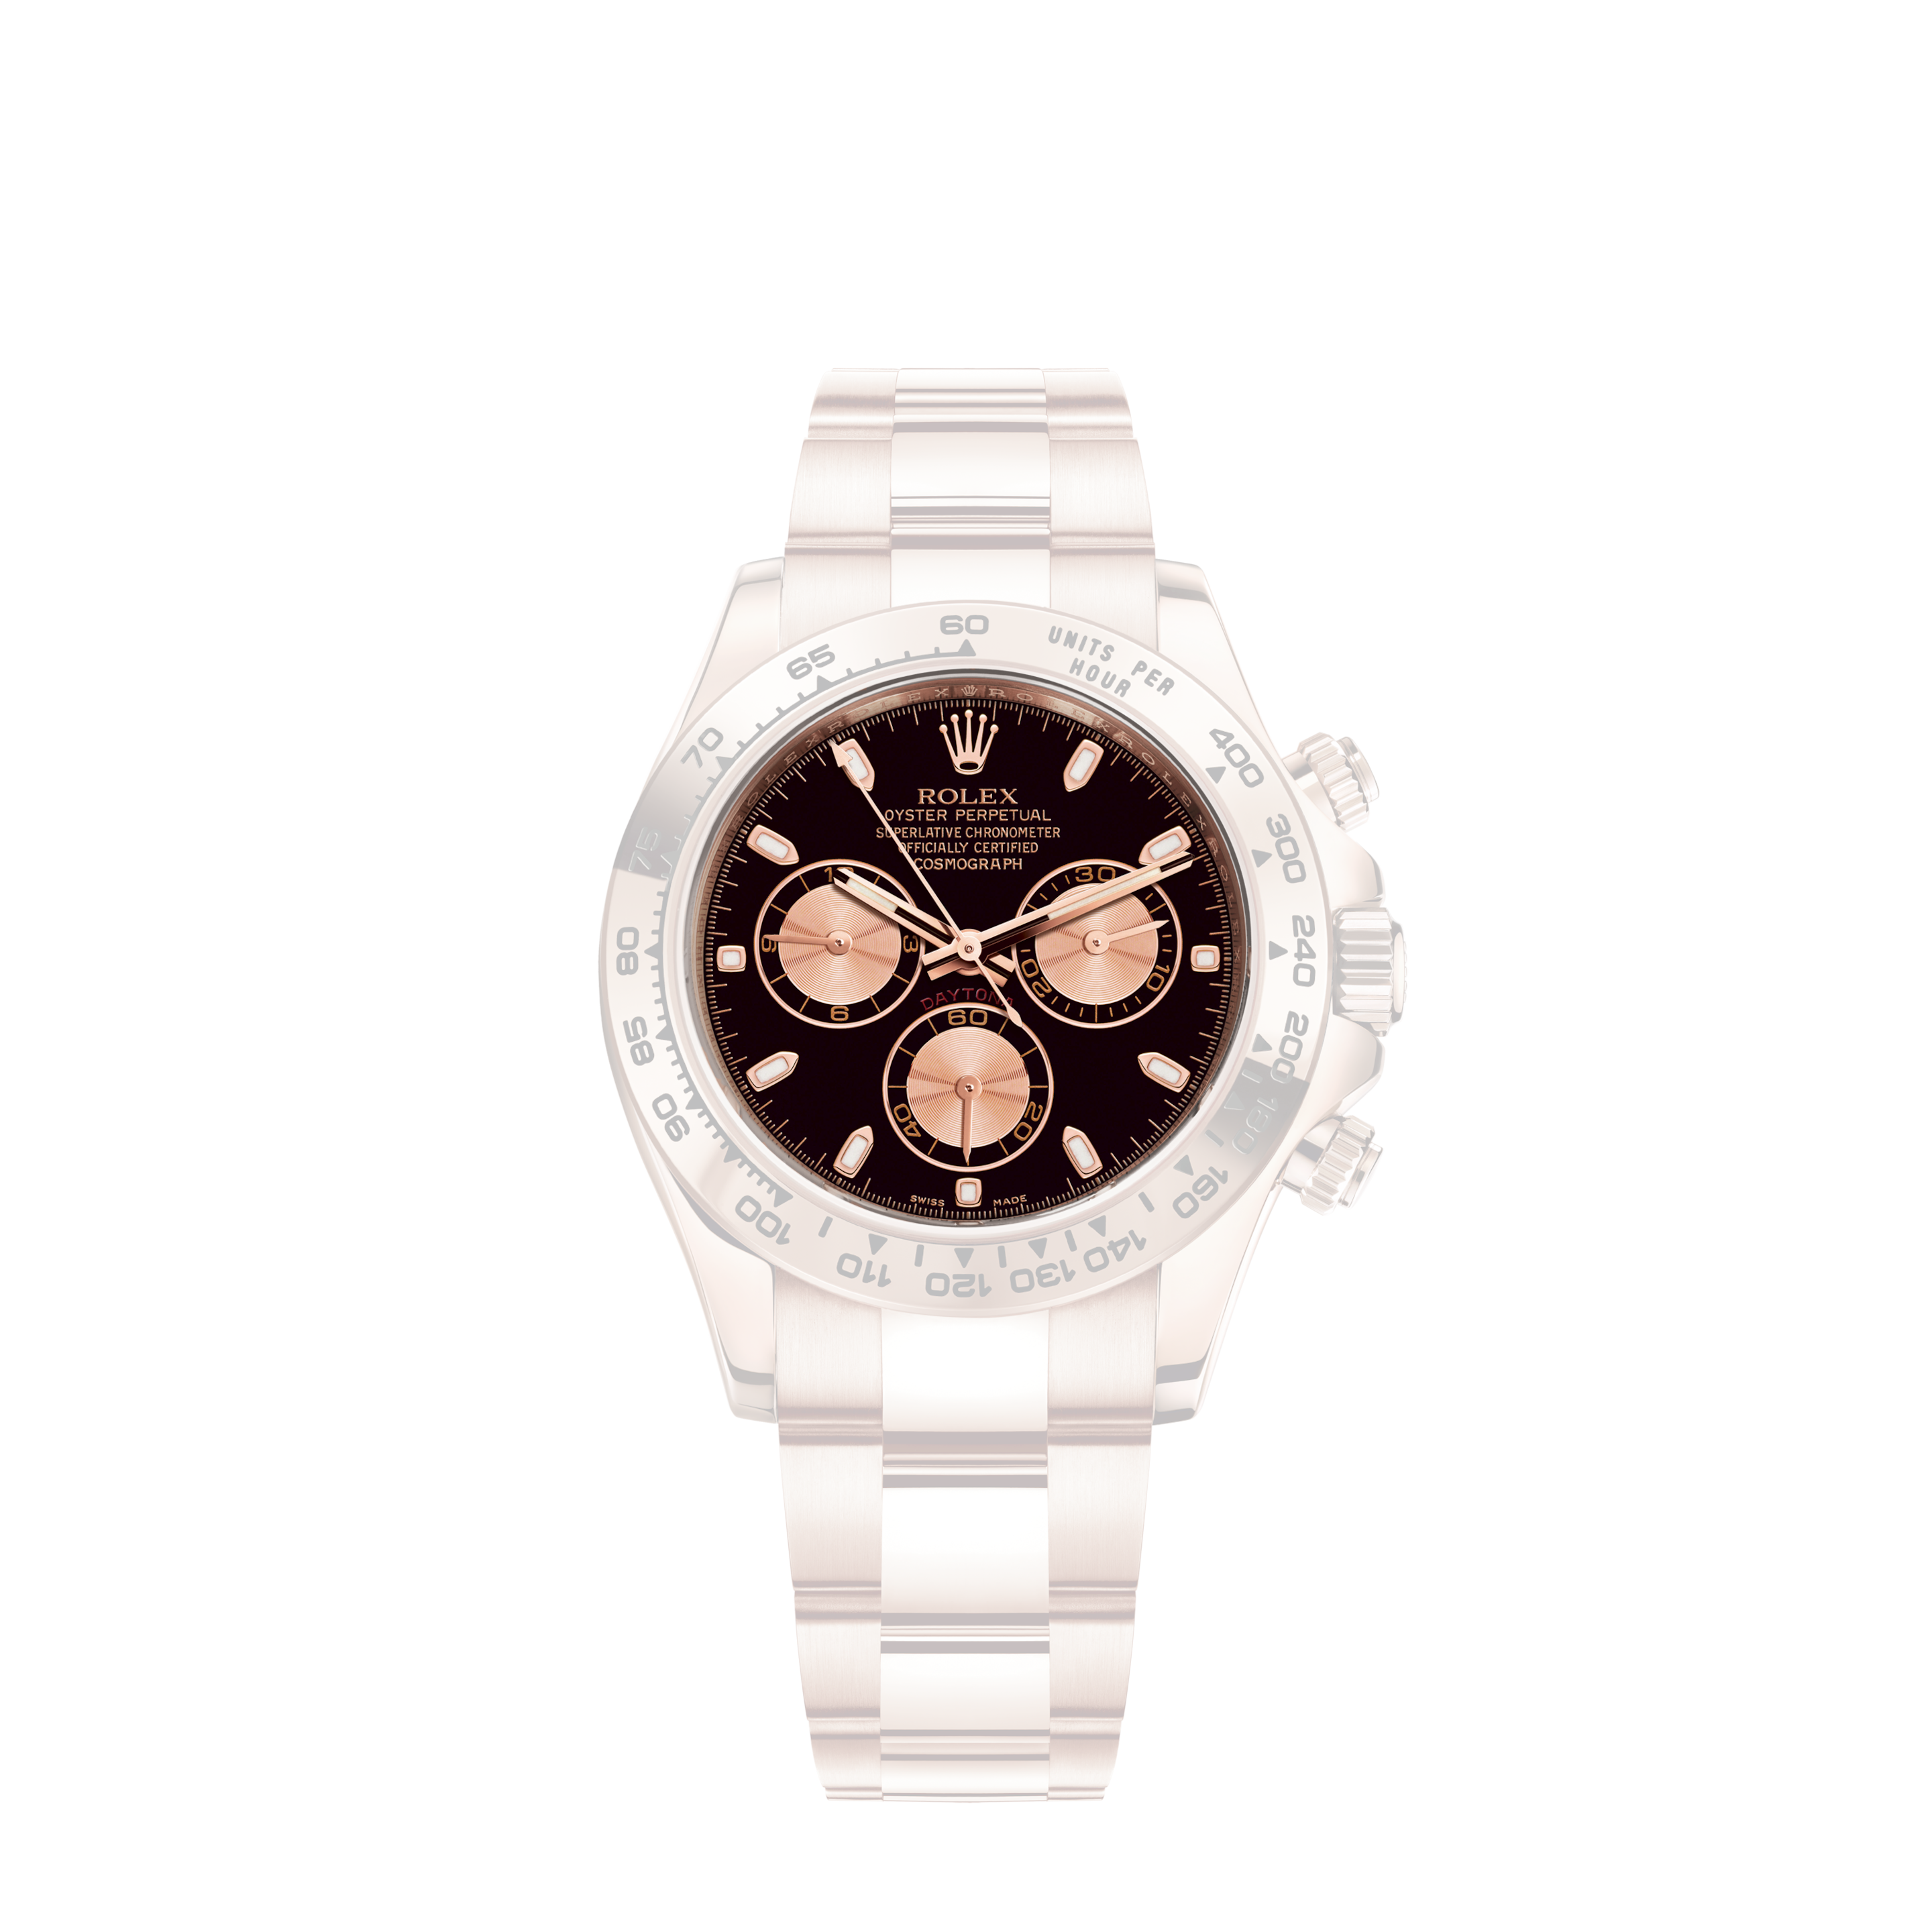 Rolex Submariner No Date 114060 Stainless Steel 40mm watch